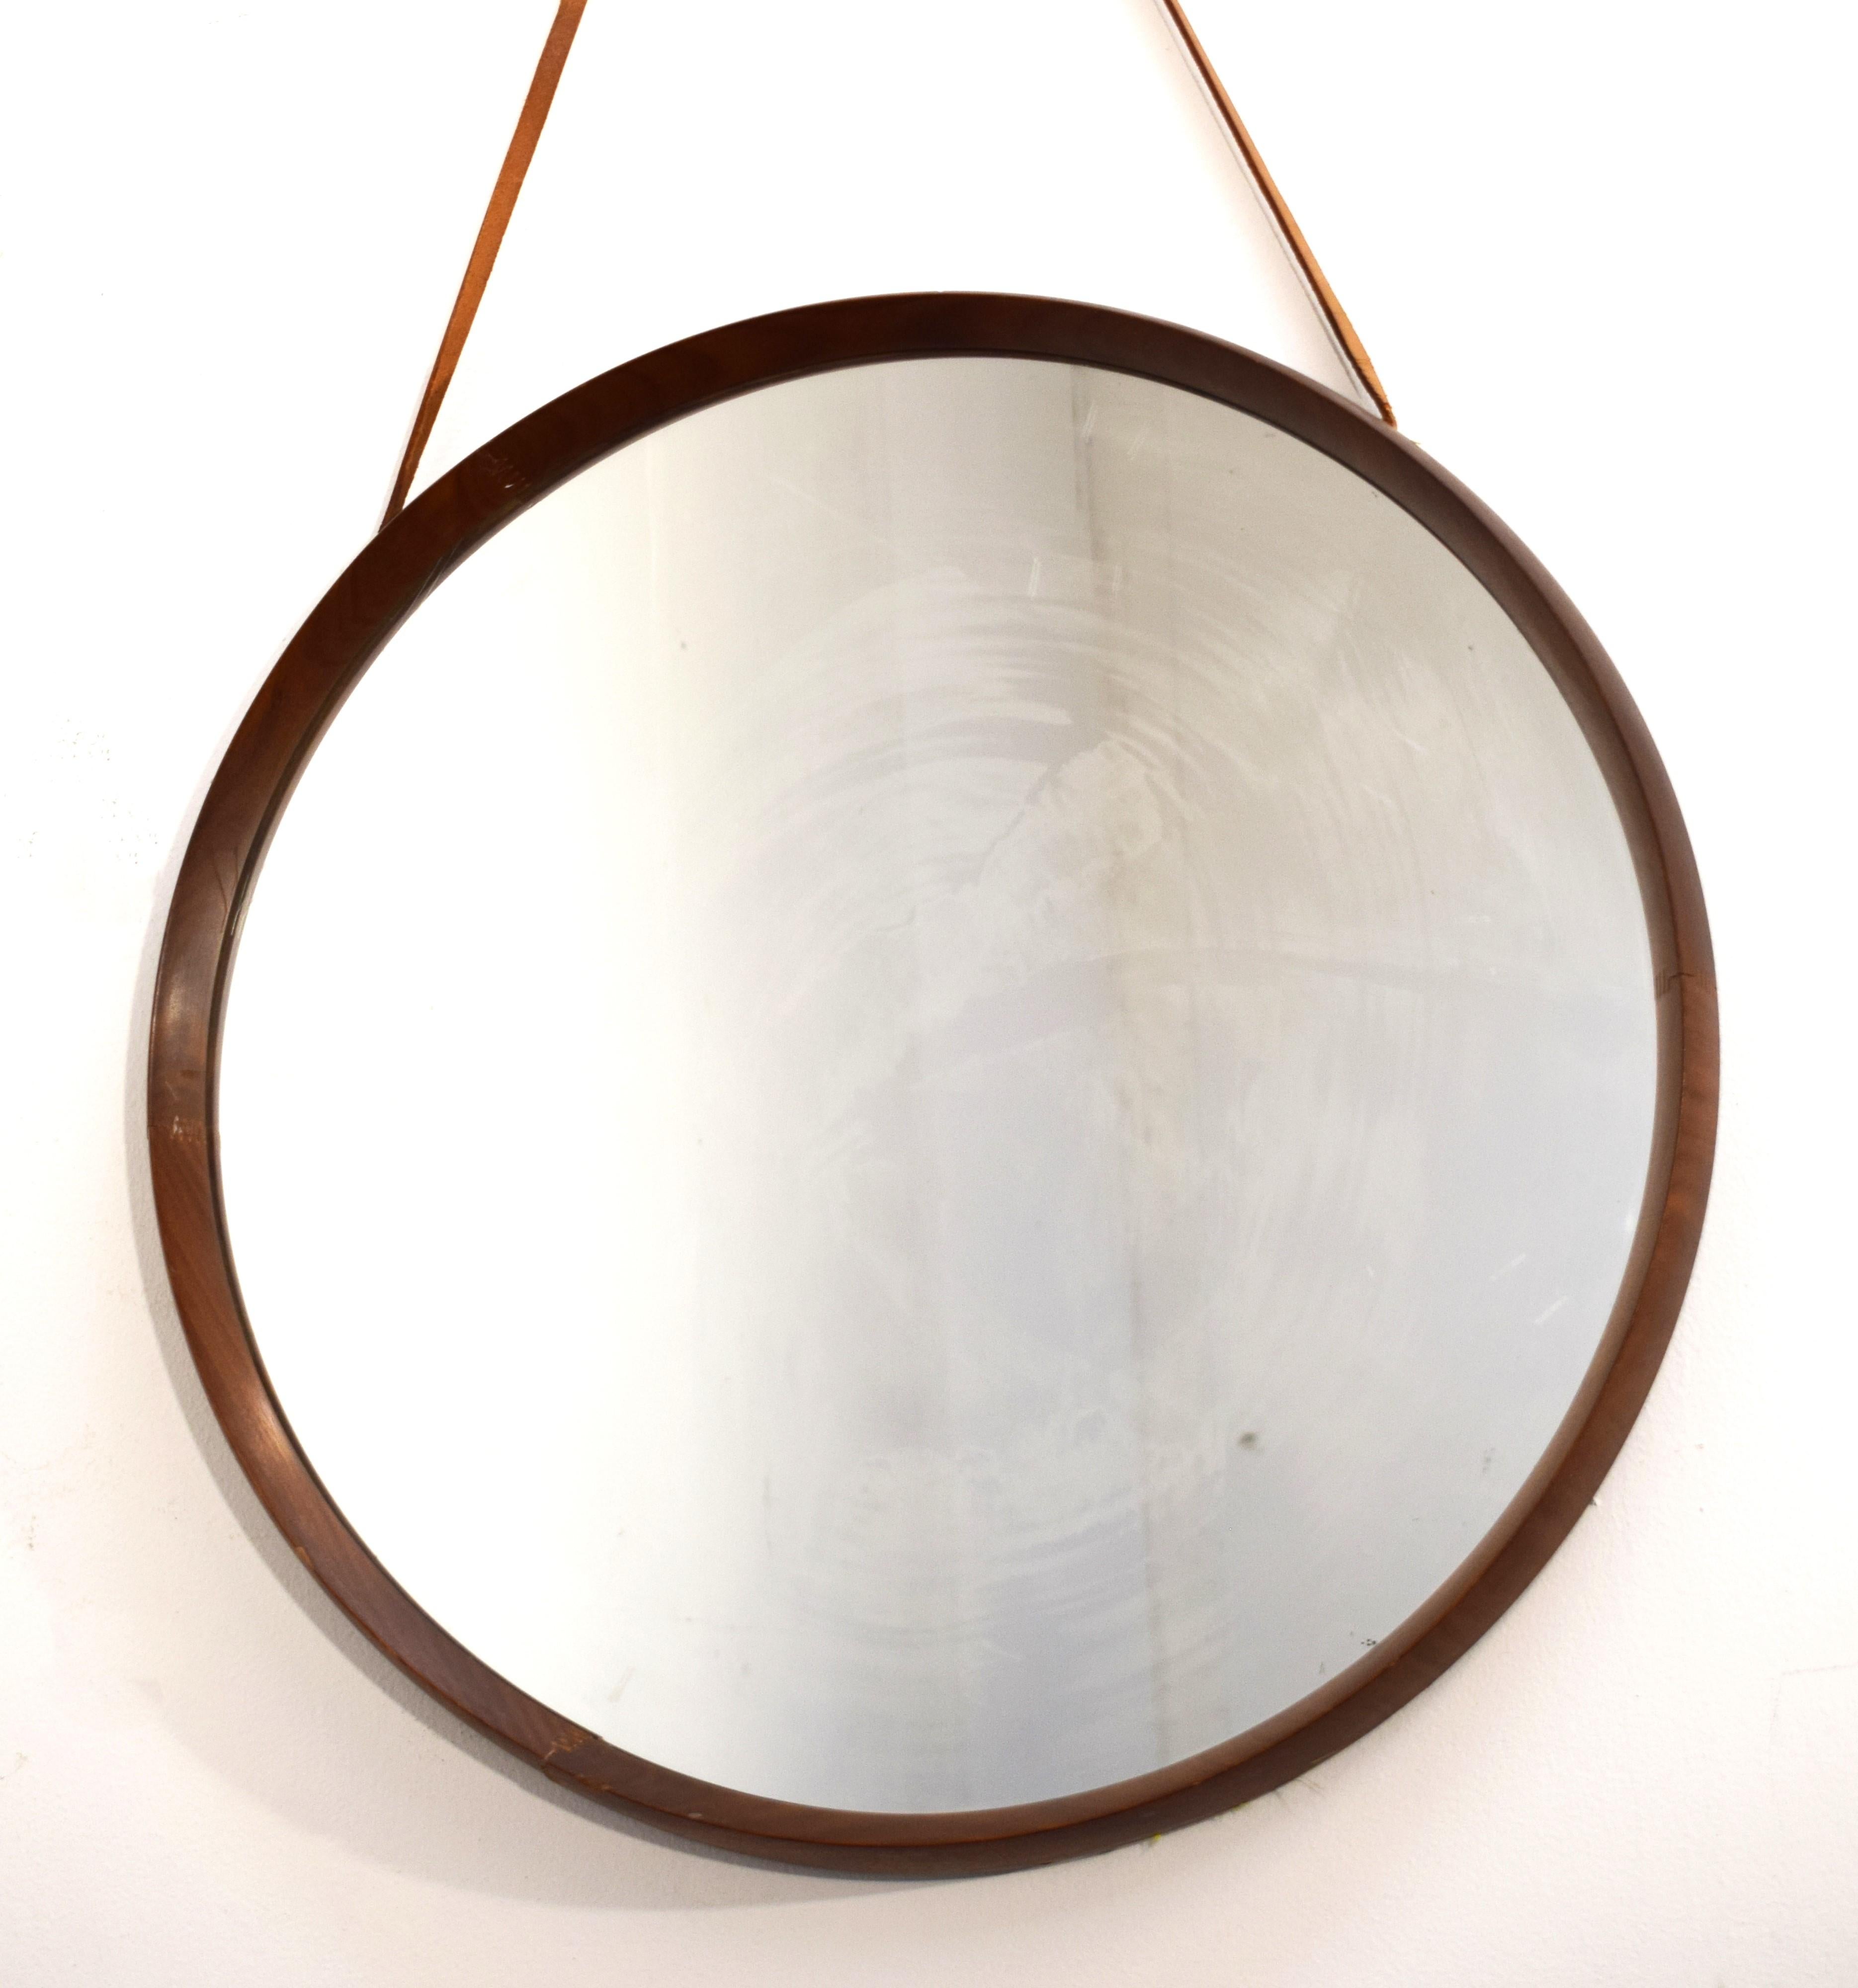 Miroir rond italien, années 1960.
Dimensions : H totale avec la dentelle 100 cm ; P= 60 cm ; D= 5 cm.